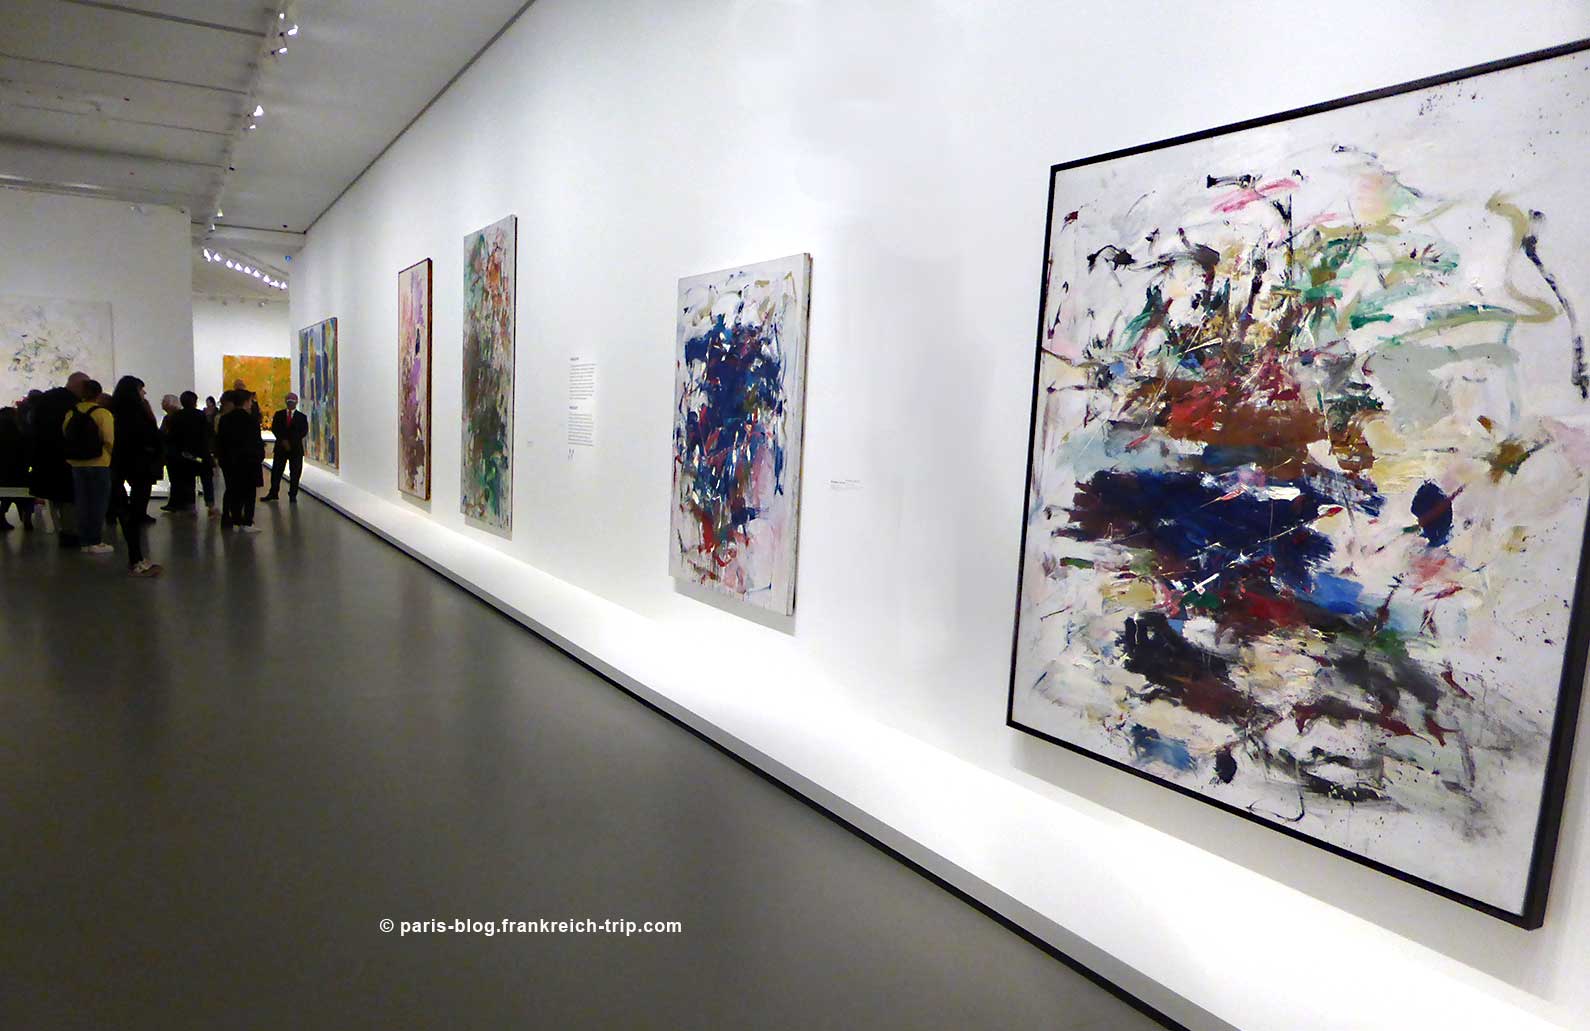 Die Ausstellung Monet - Mitchell in der Fondation Louis Vuitton